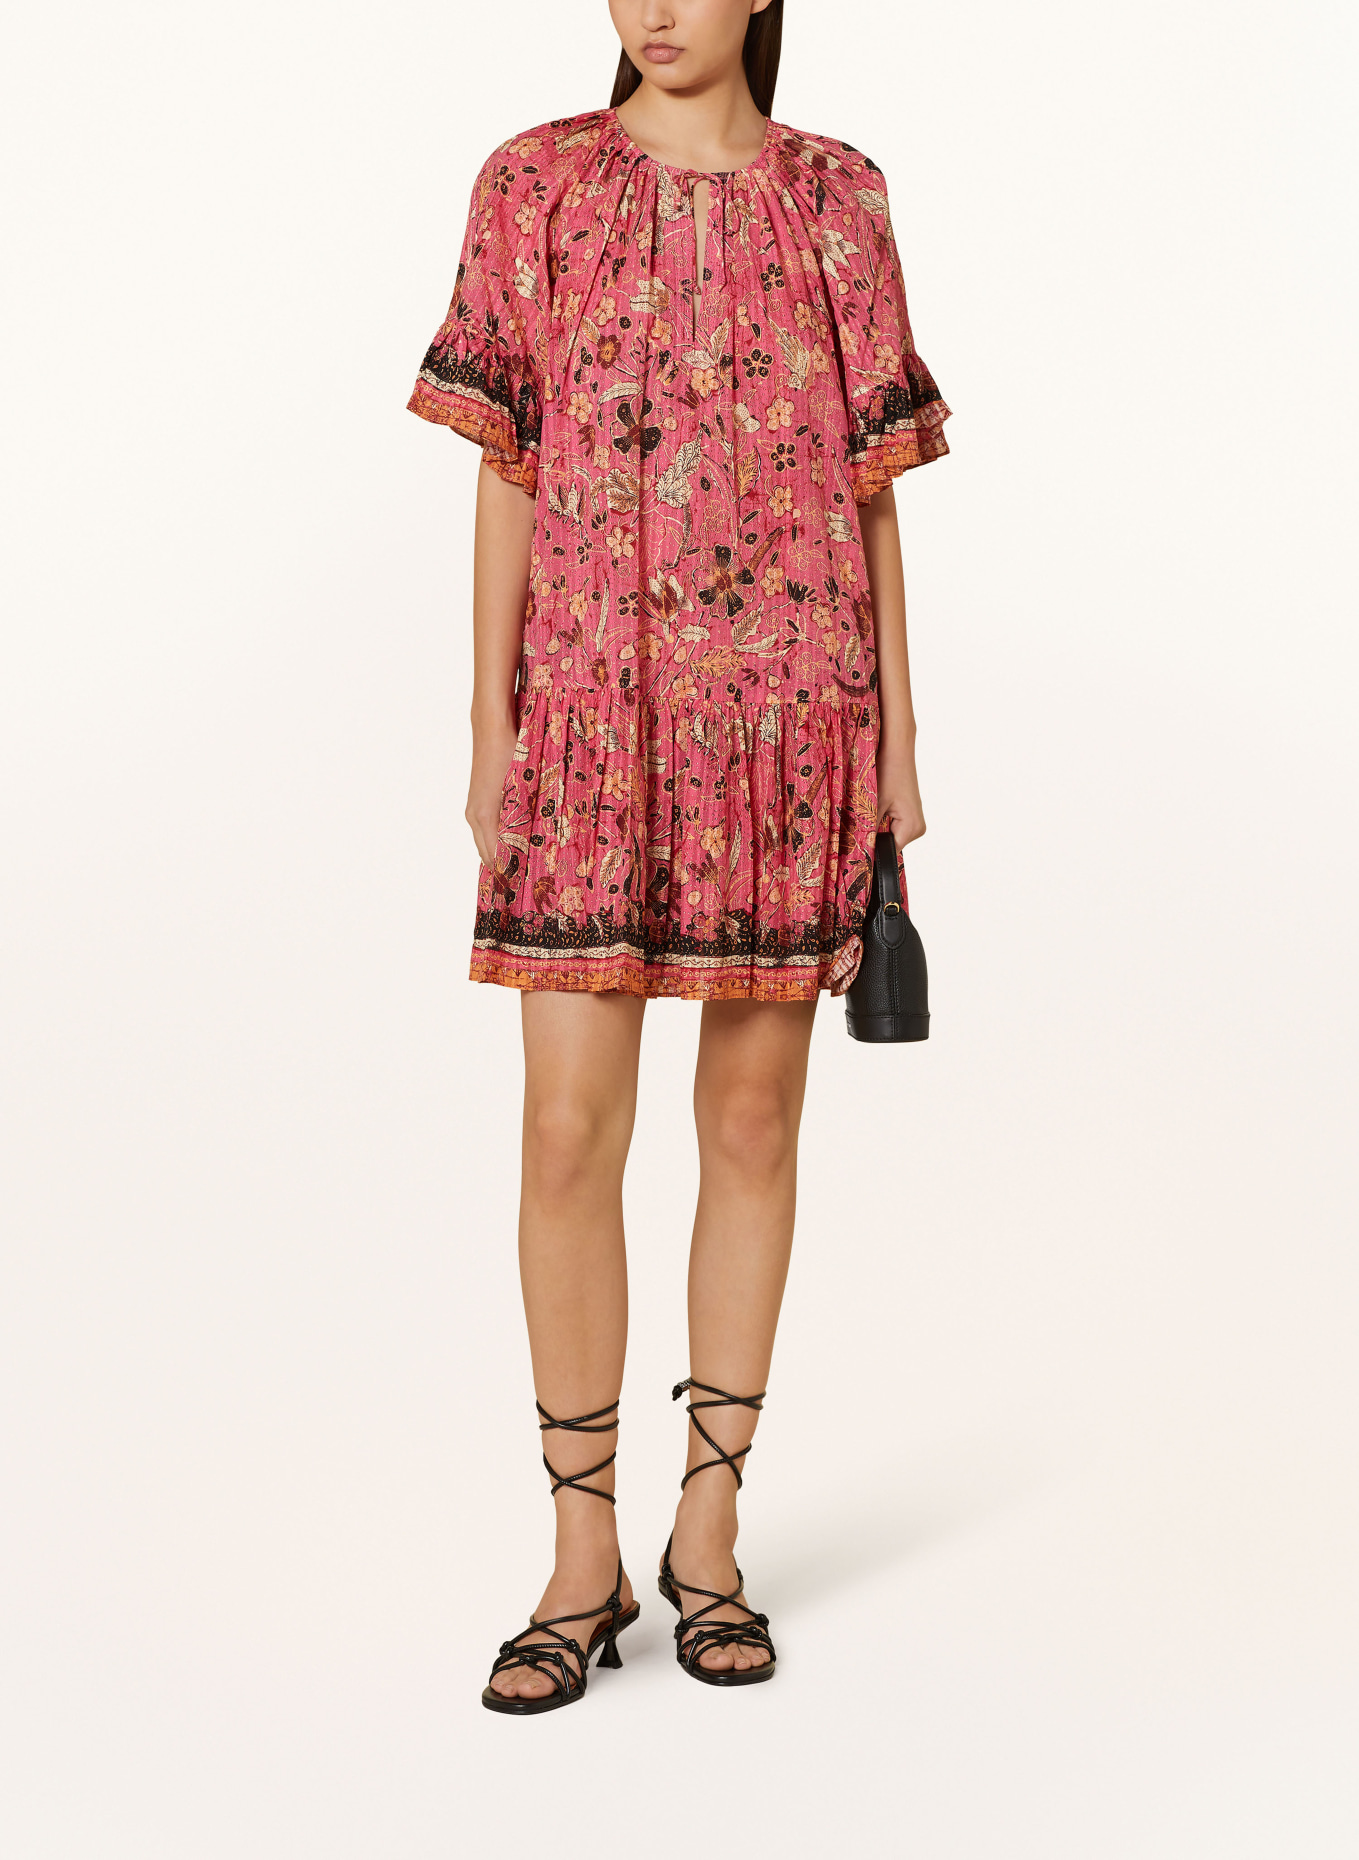 ULLA JOHNSON Kleid MALIE mit Volants, Farbe: PINK/ DUNKELROT/ SCHWARZ (Bild 2)